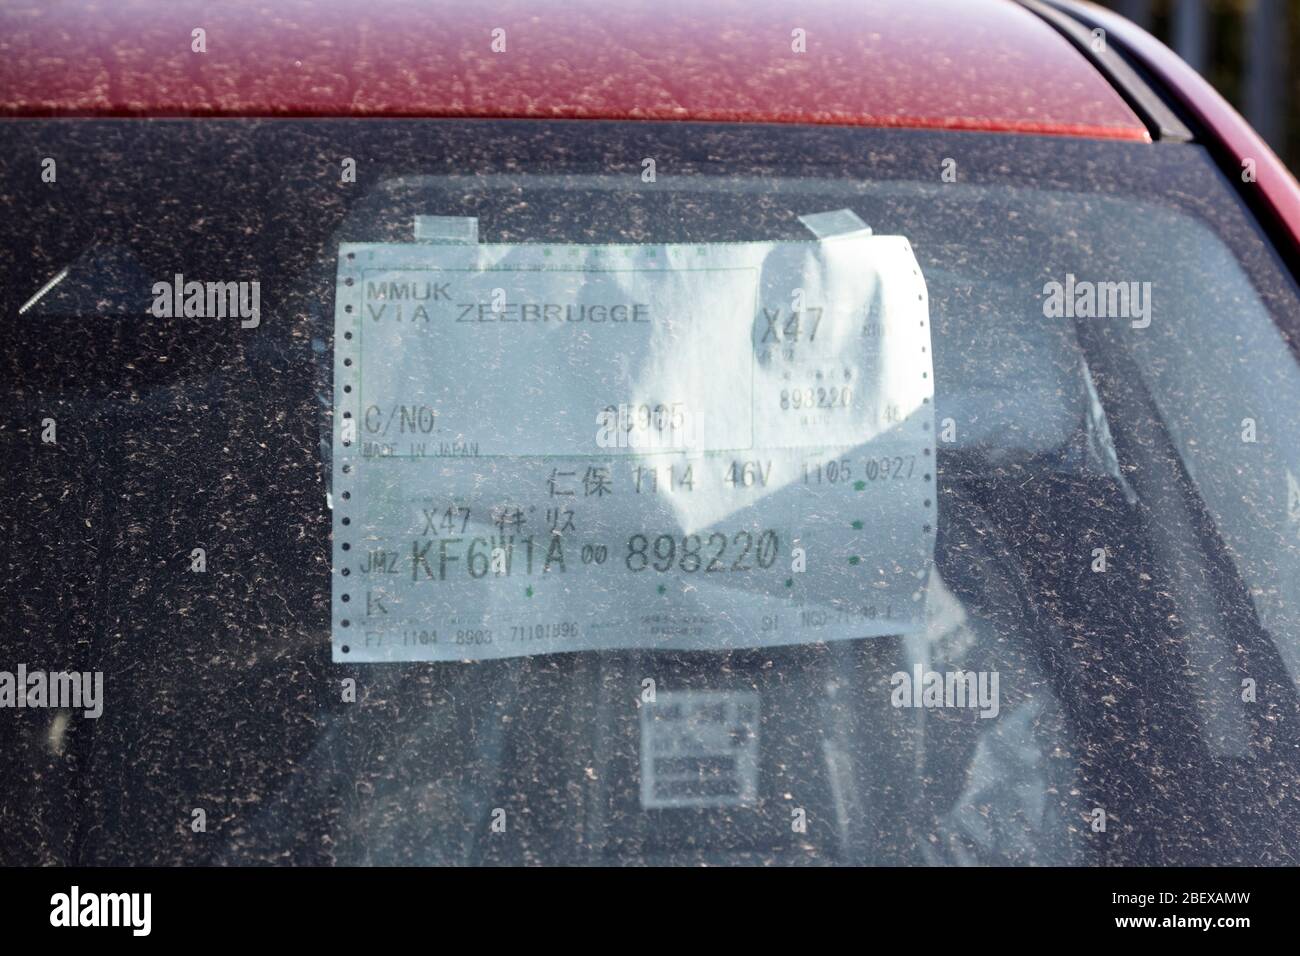 Fensteraufkleber des nagelneuen japanischen Autos, das durch geschlossene Autohäuser wegen der Coronavirus-Sperre von Newtownabbey Nordirland mit Staub bedeckt ist Stockfoto